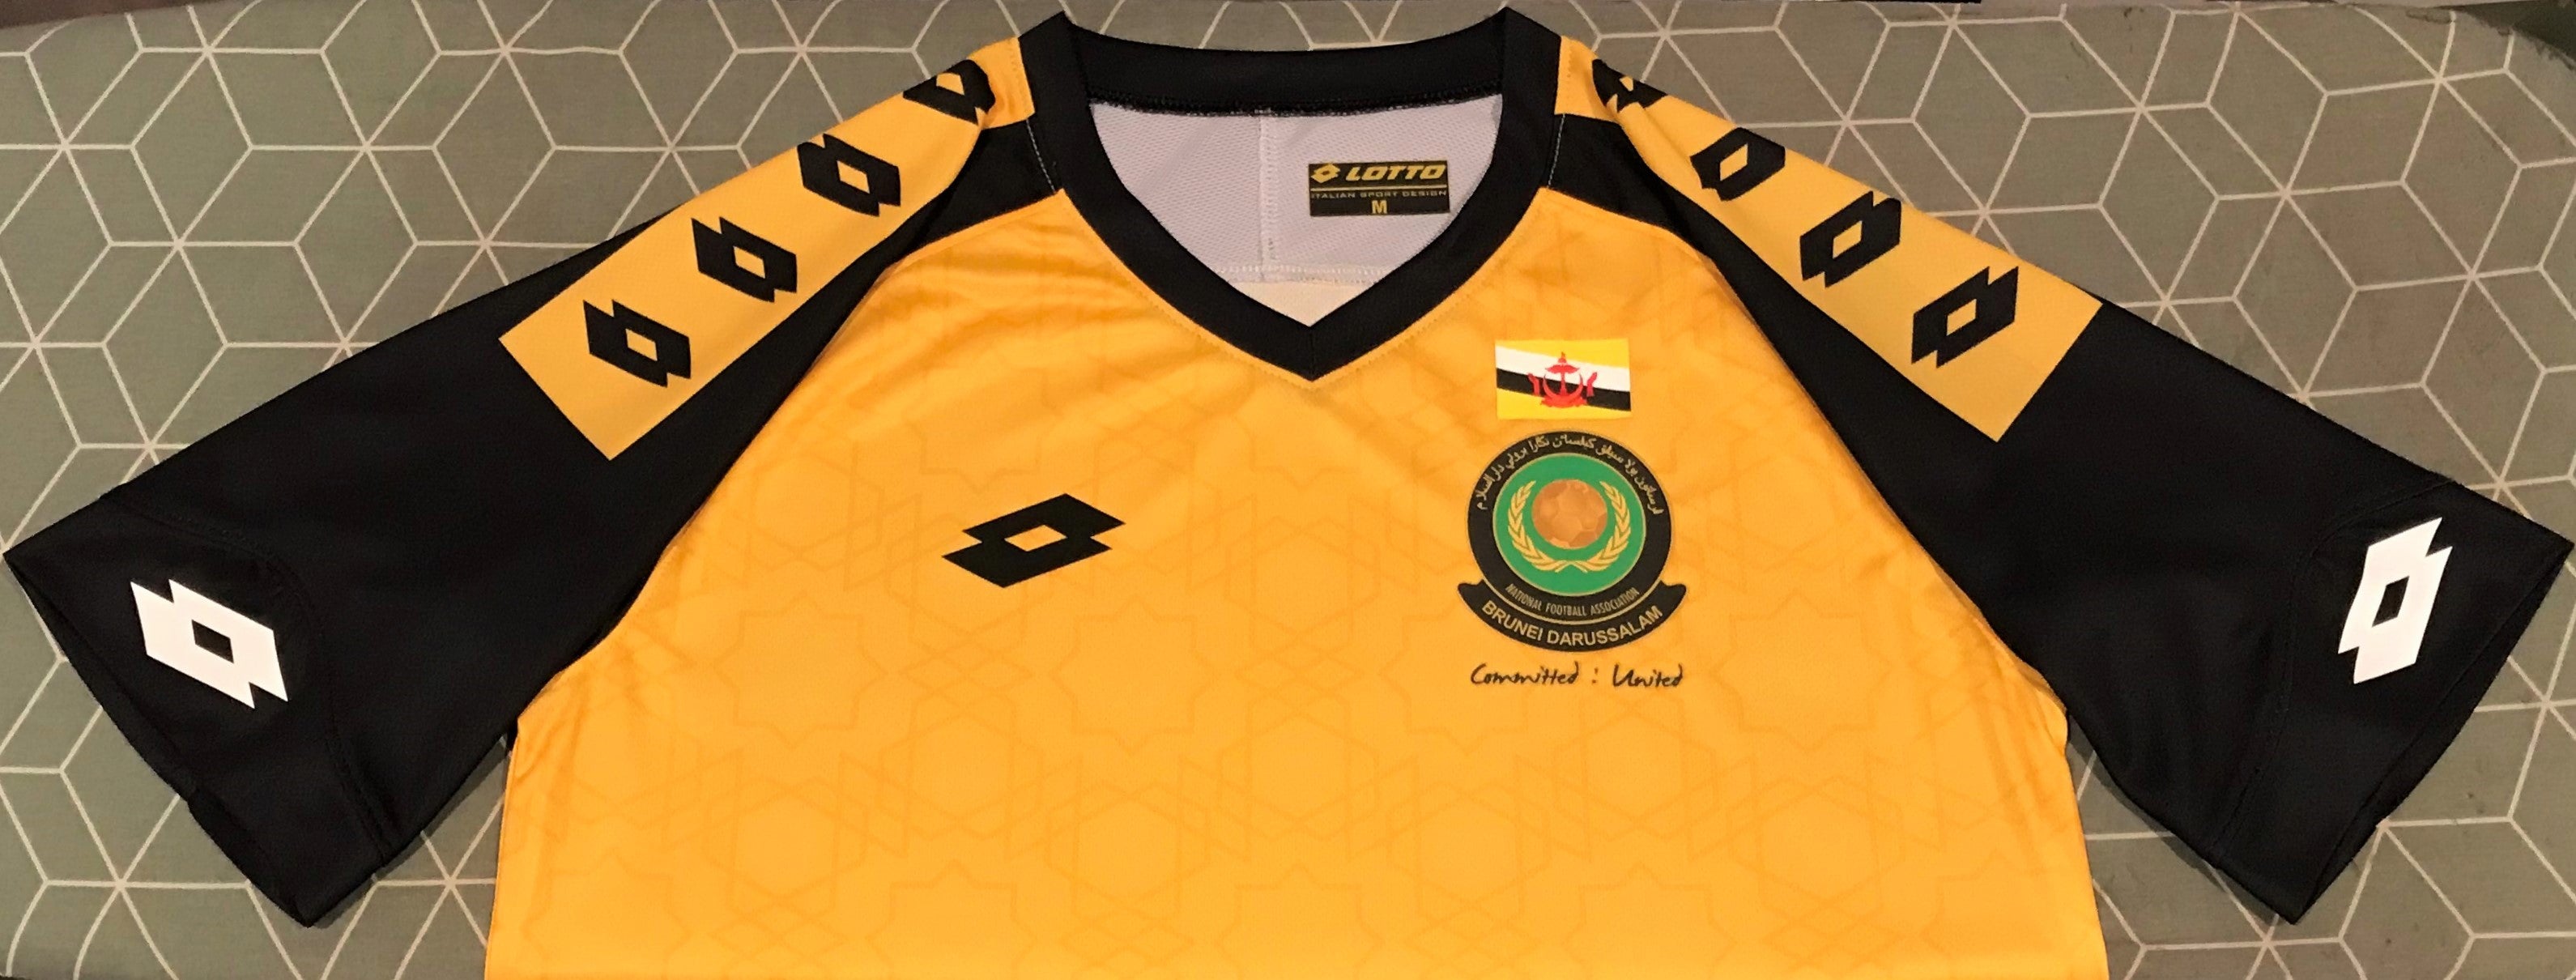 Brunei 2018 Home Jersey/Shirt